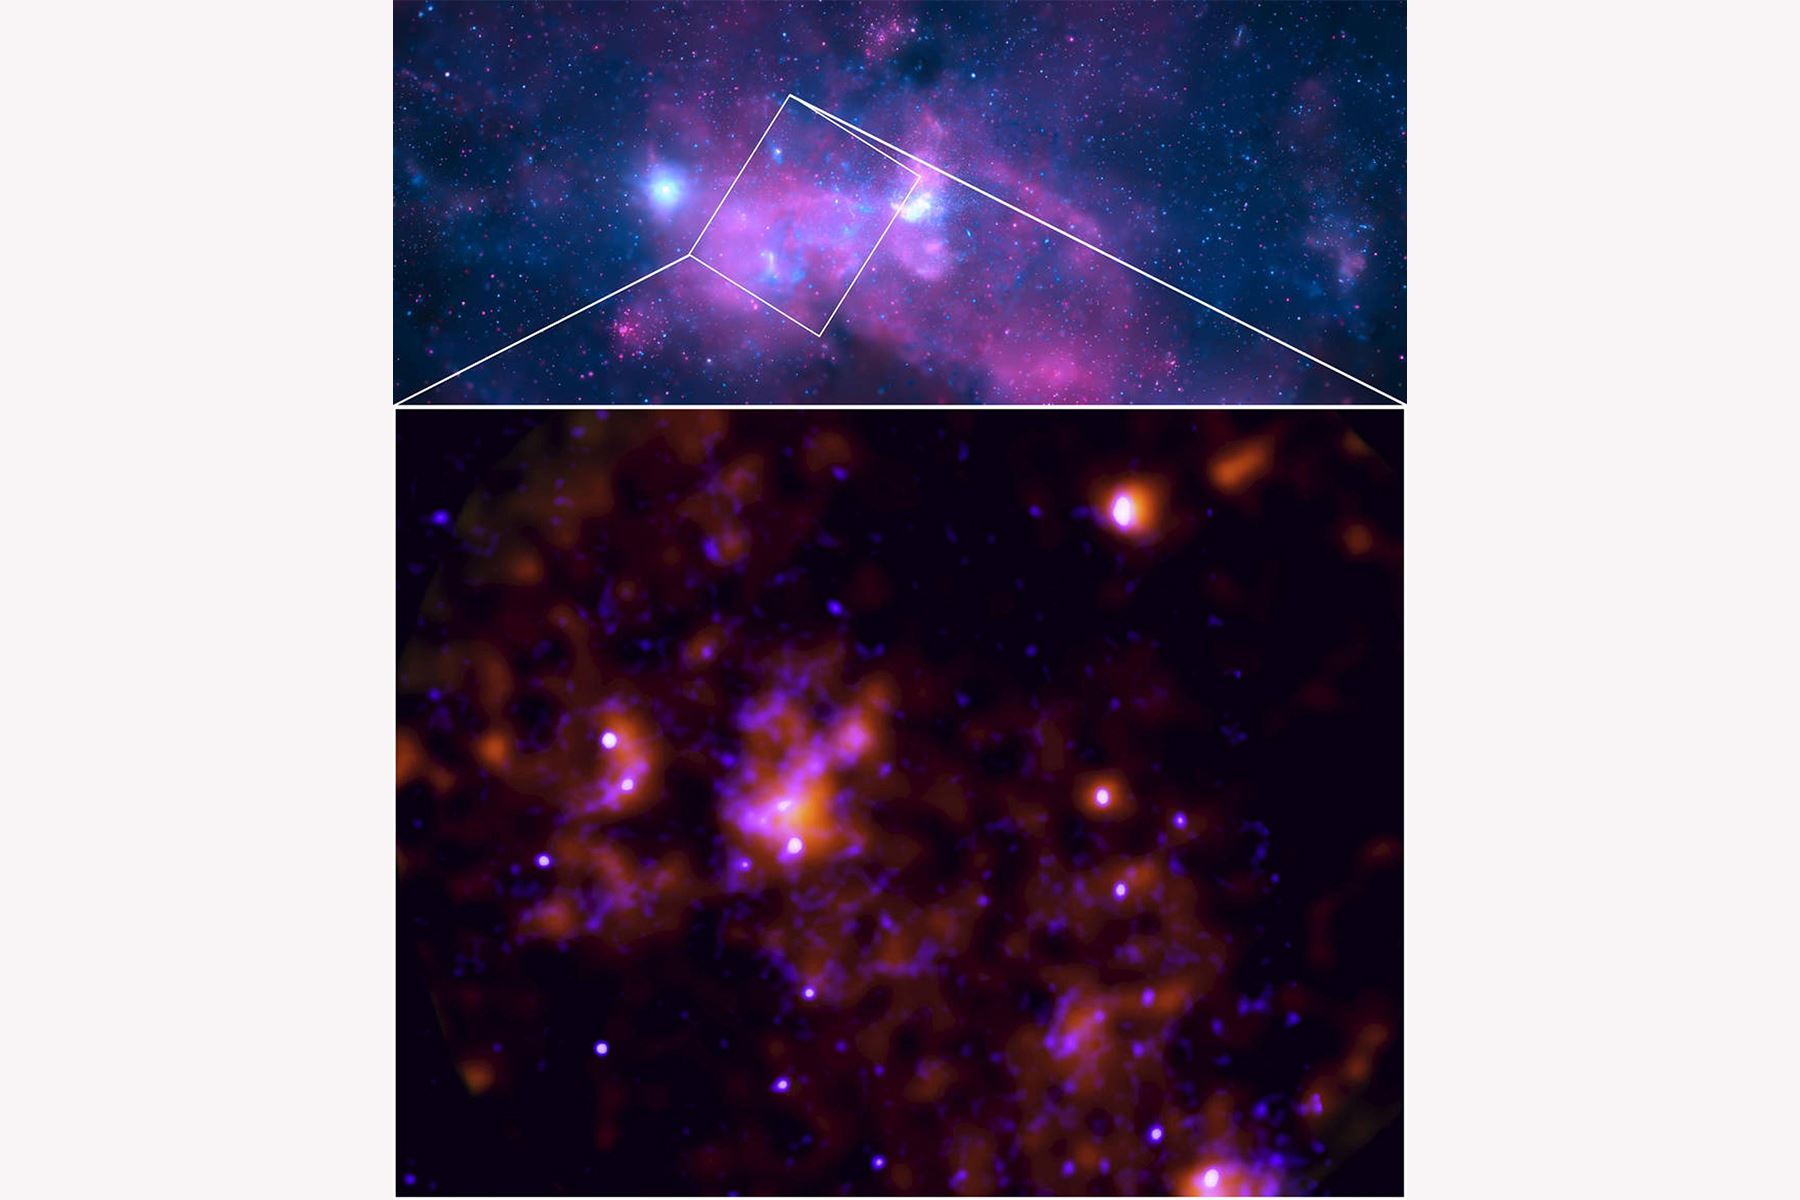 Sagitario A*, el agujero negro supermasivo en el centro de la Vía Láctea, es mucho menos luminoso que otros agujeros negros en el centro de las galaxias que podemos observar, lo que significa que el agujero negro central de nuestra galaxia no ha estado devorando activamente material a su alrededor.